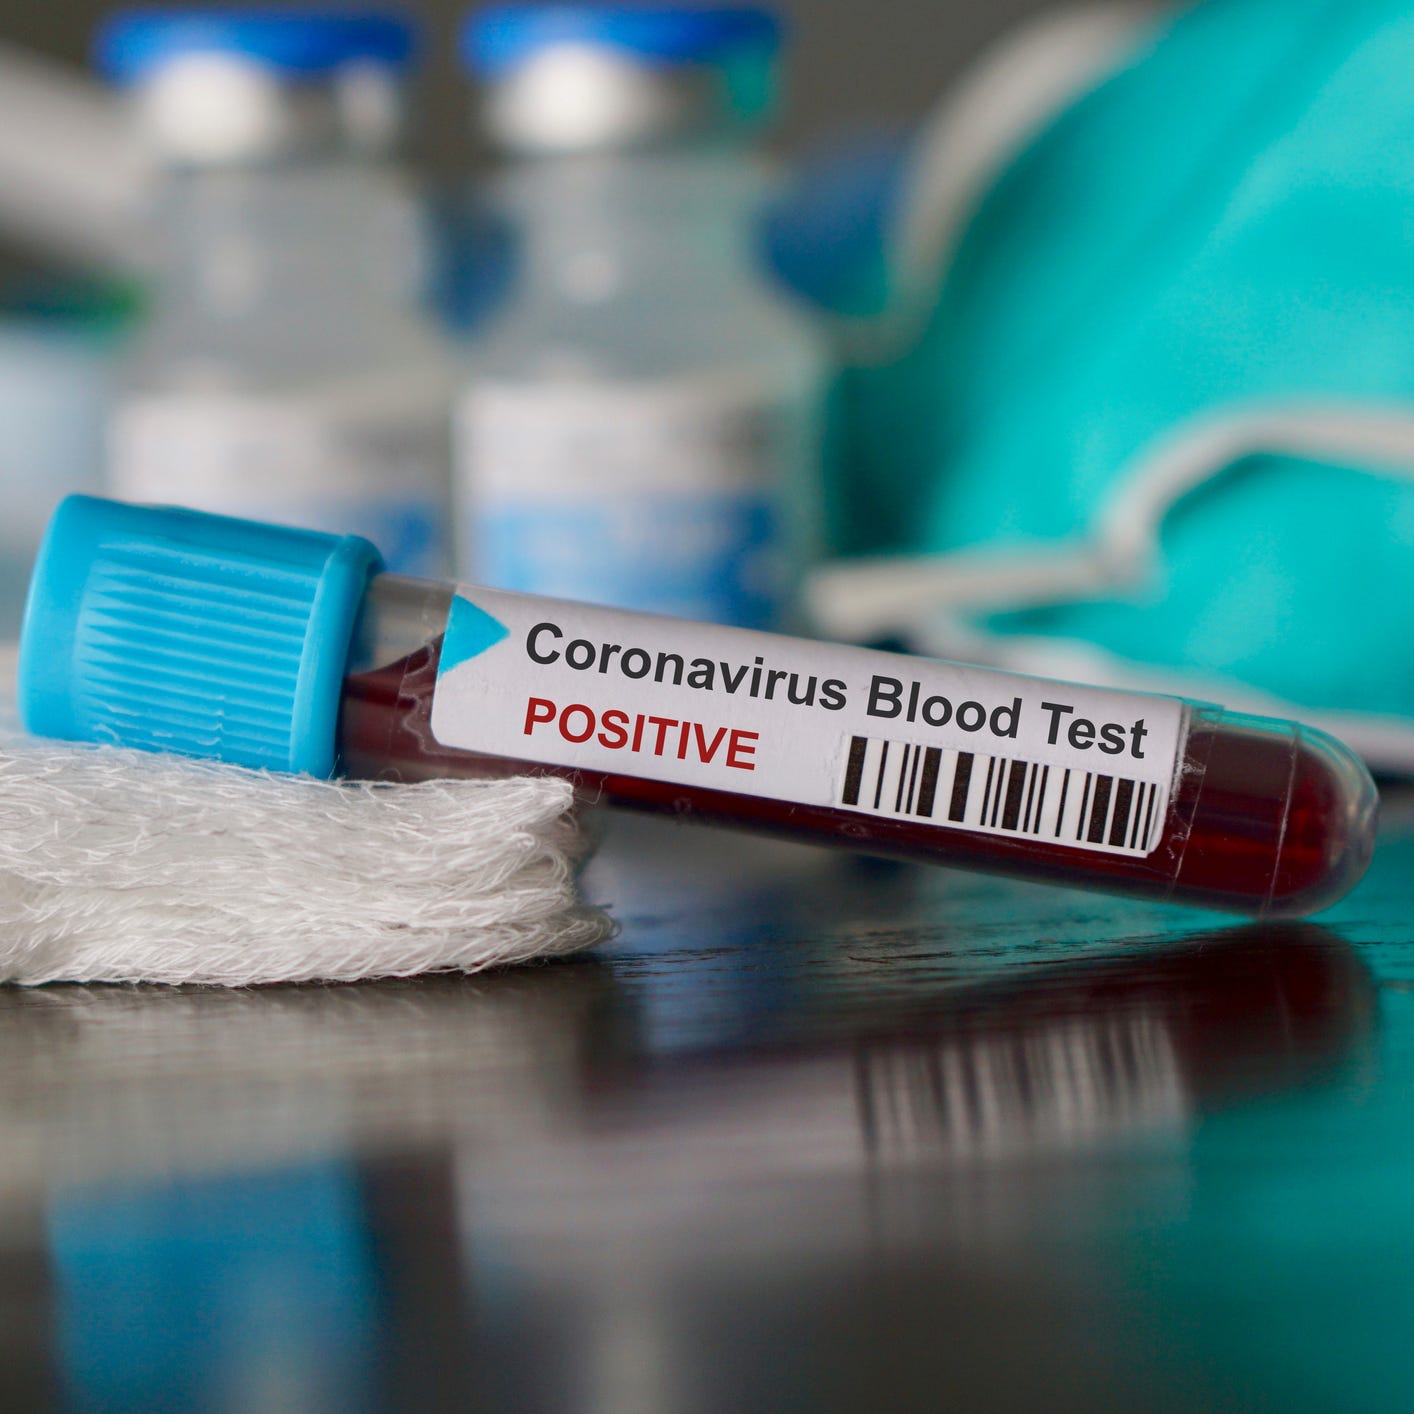 Positive blood test result for coronavirus.